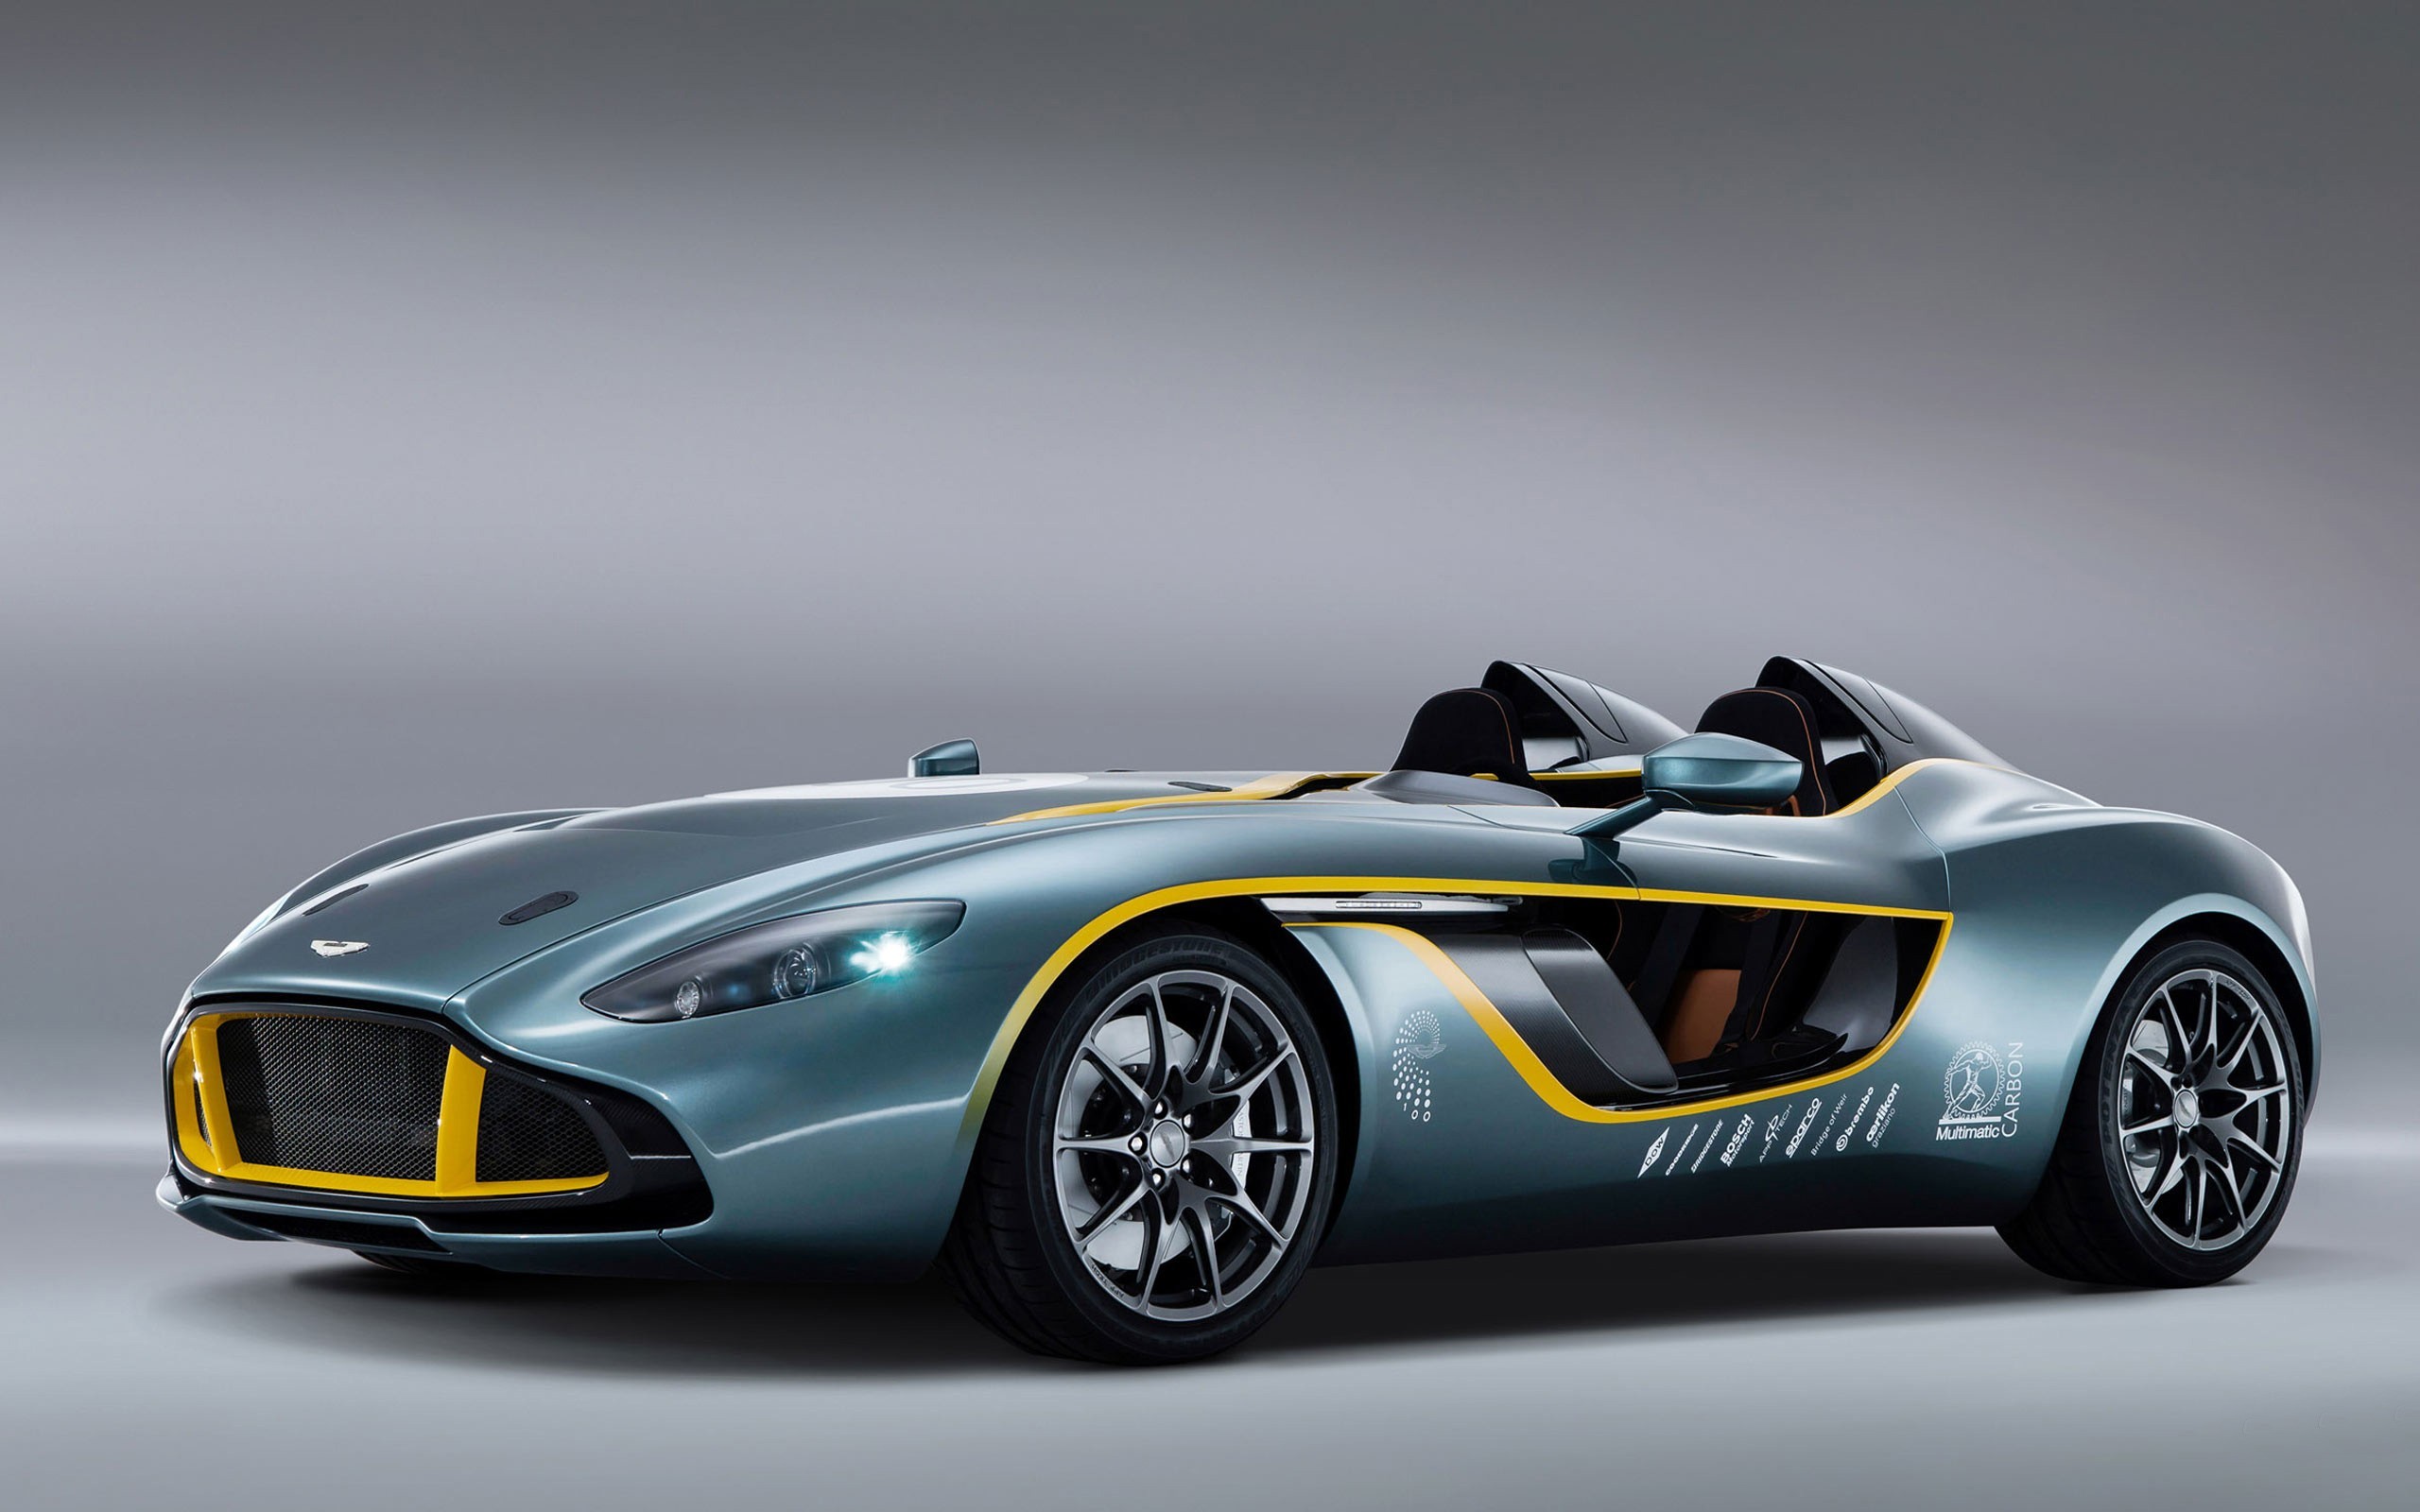 Aston Martin racing car concept